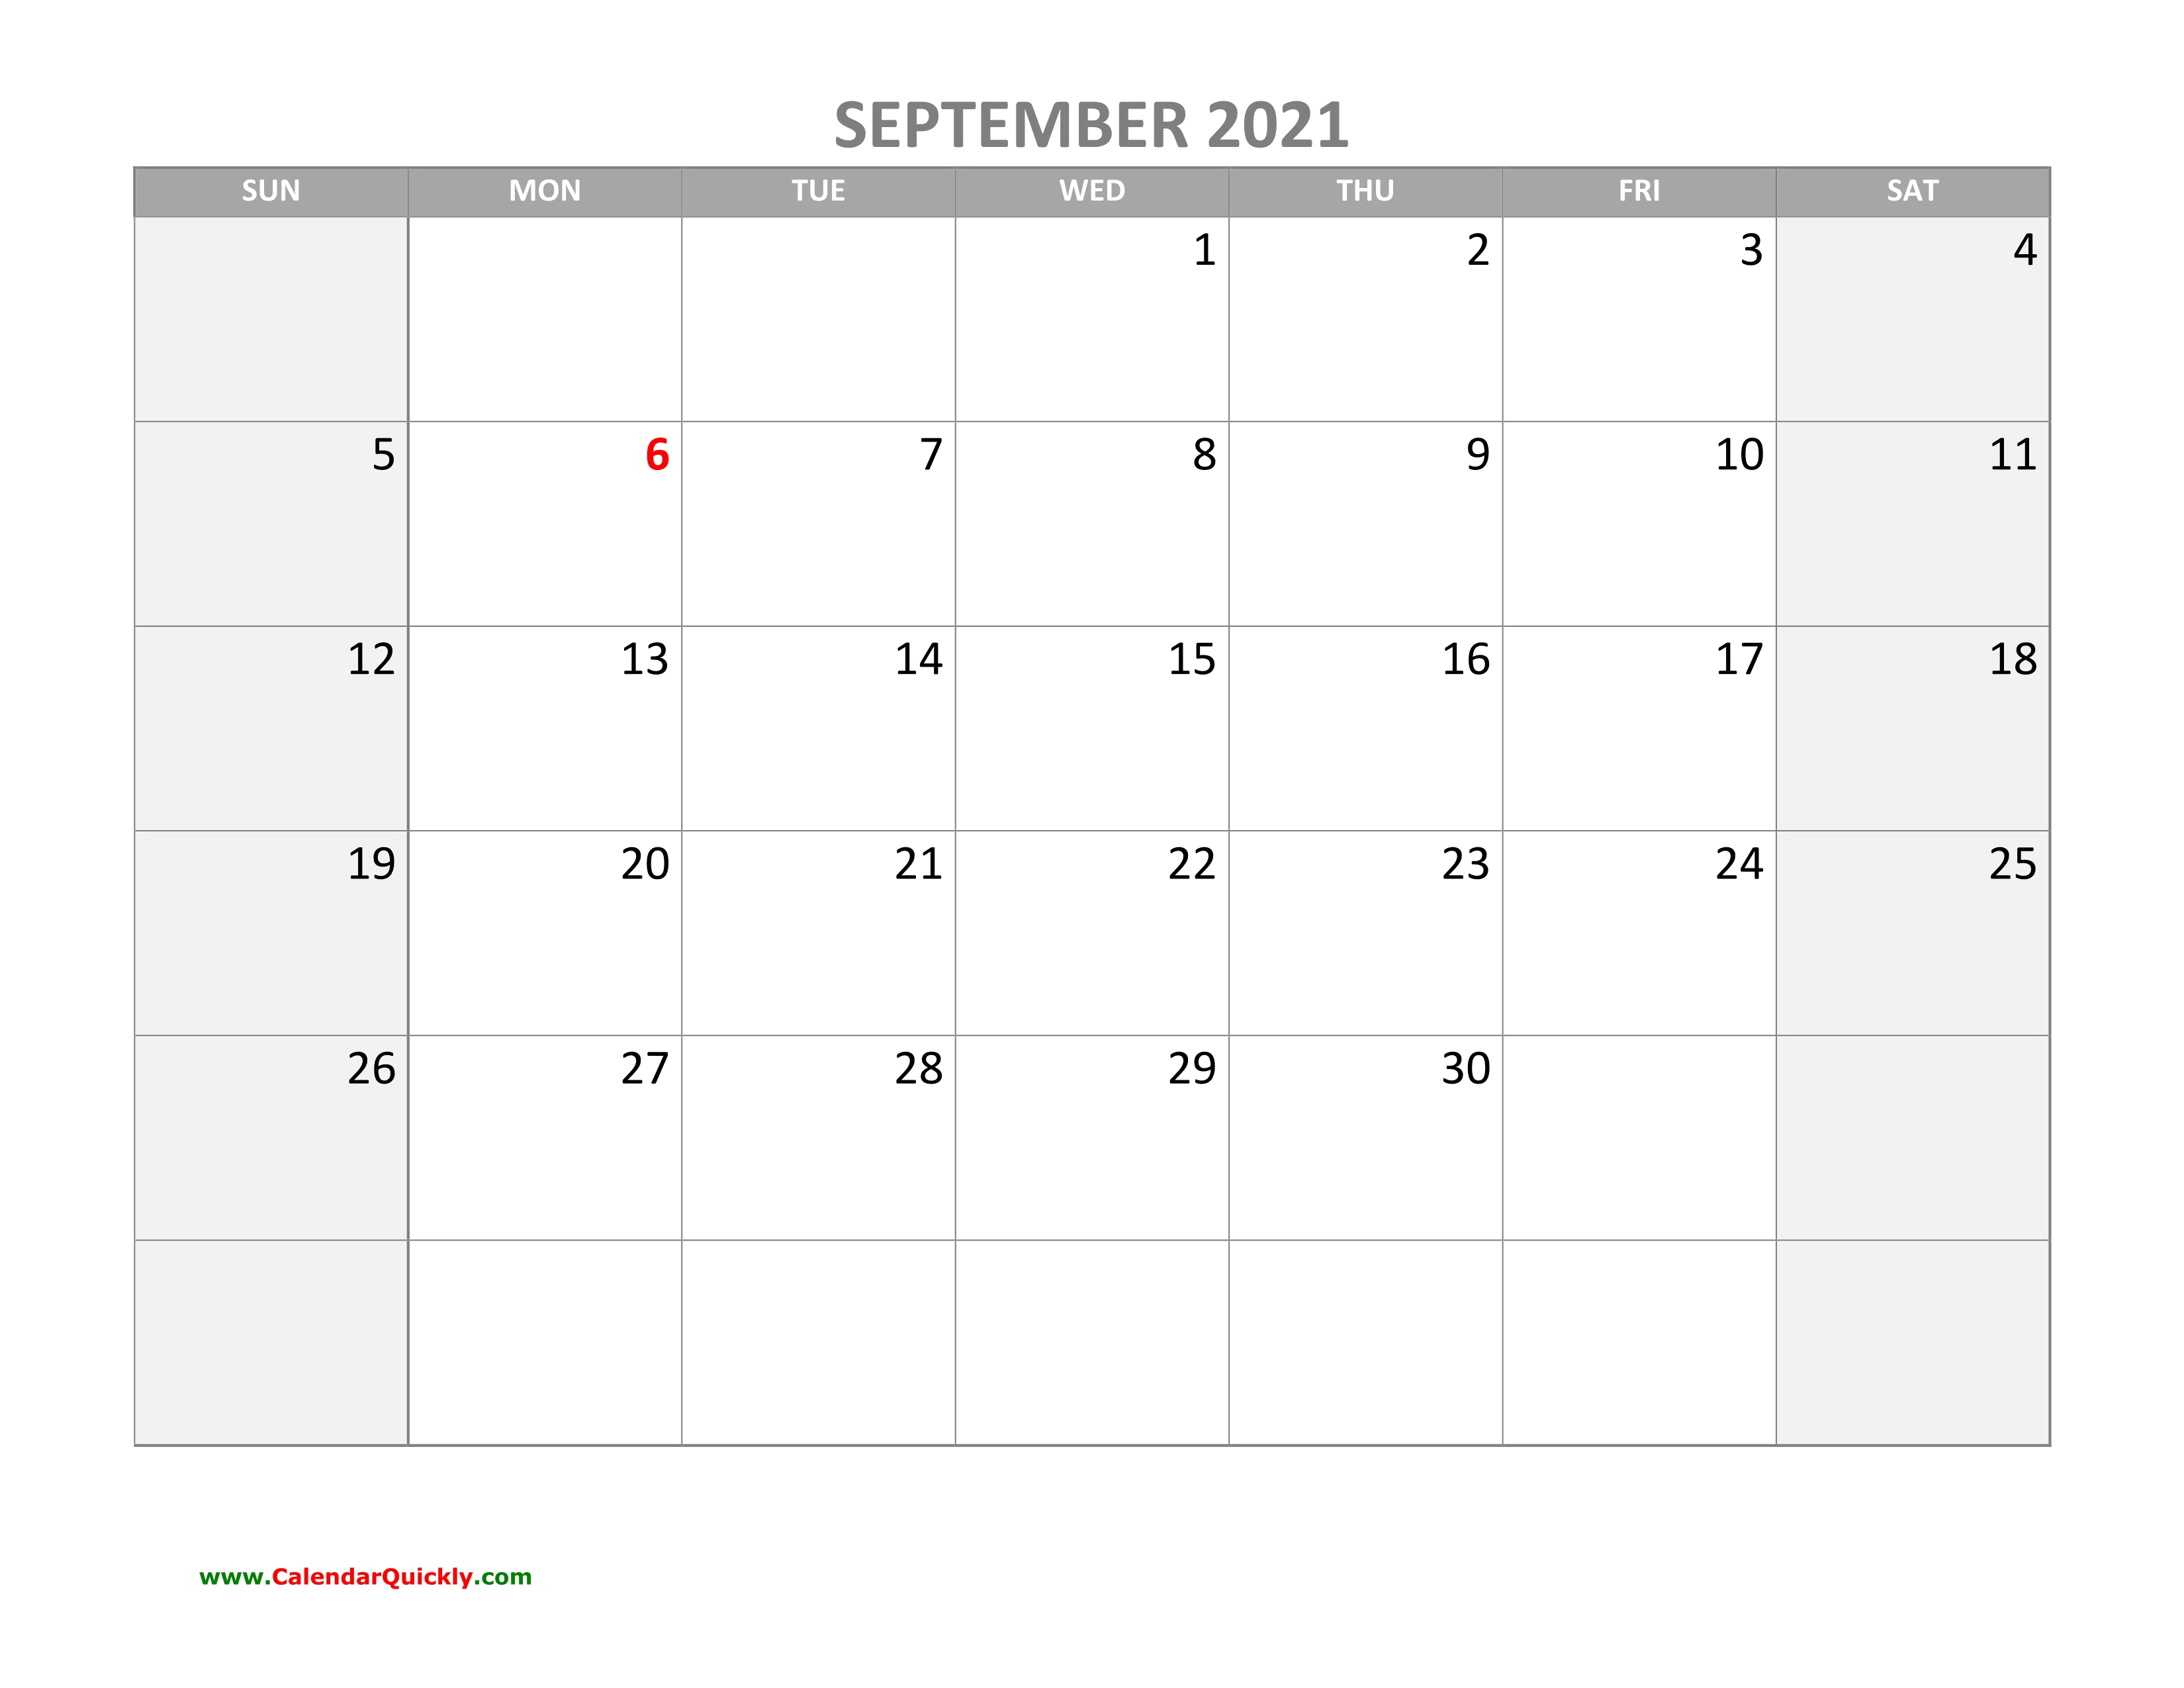 September Calendar 2021 With Holidays | Calendar Quickly September 2021 Calendar With Holidays